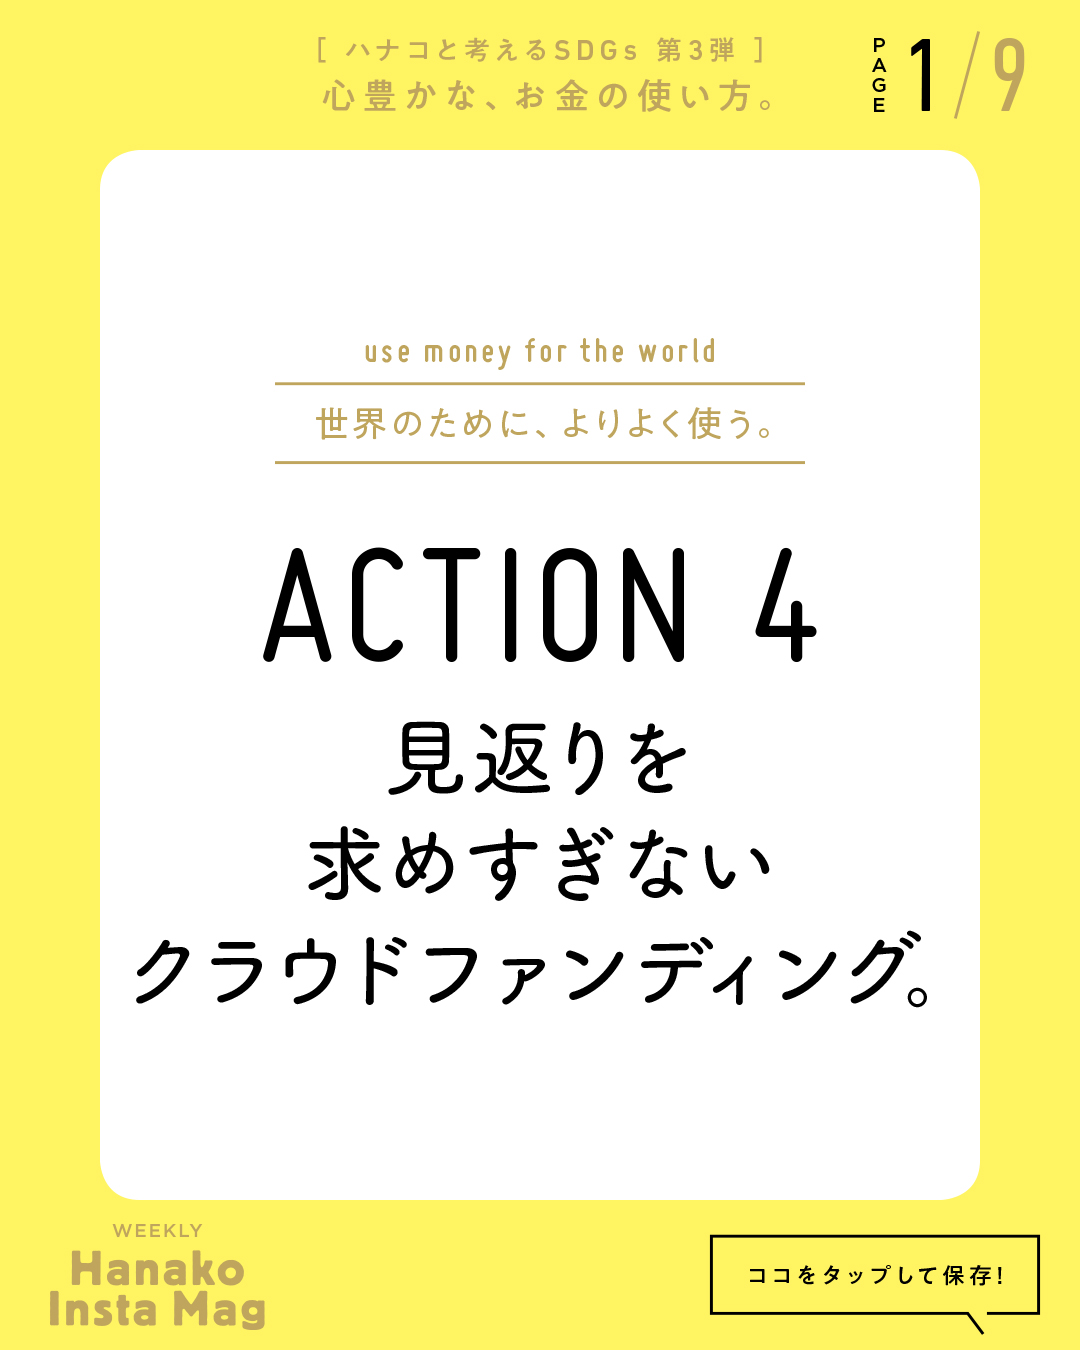 SDGs#3_sekai_action#4-1